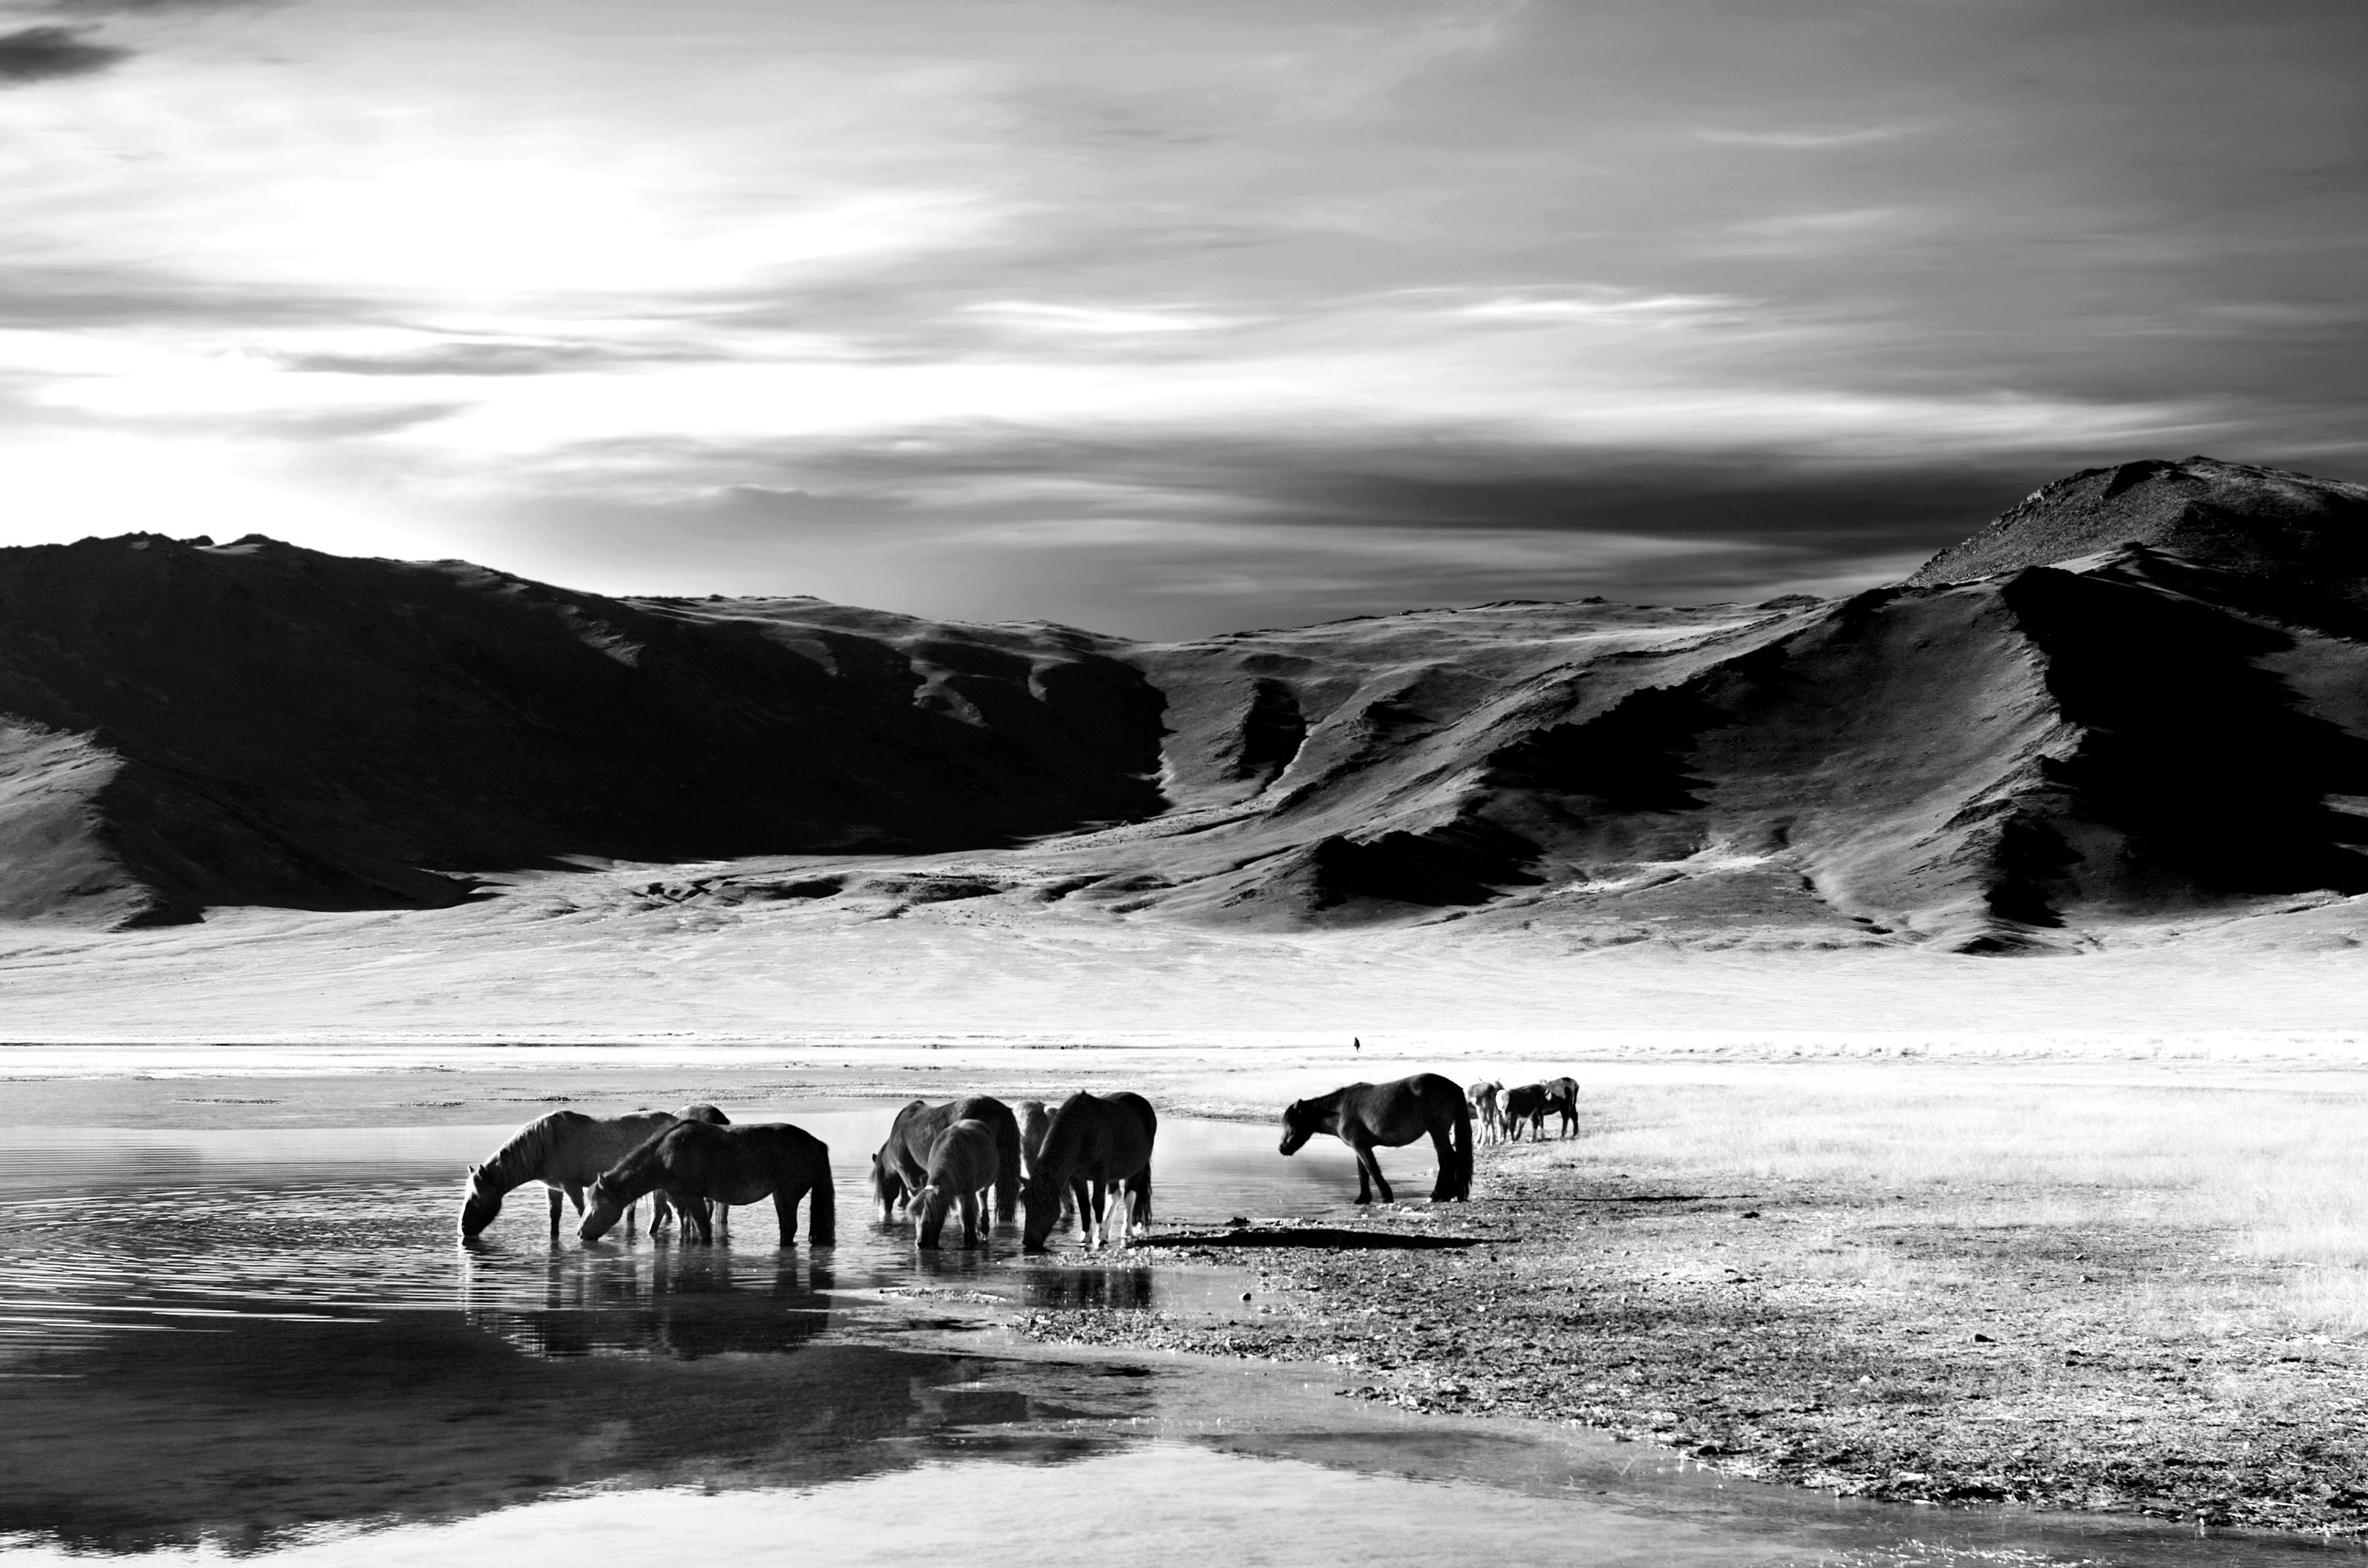 Papermoon Fototapete Landschaft schwarz & weiß